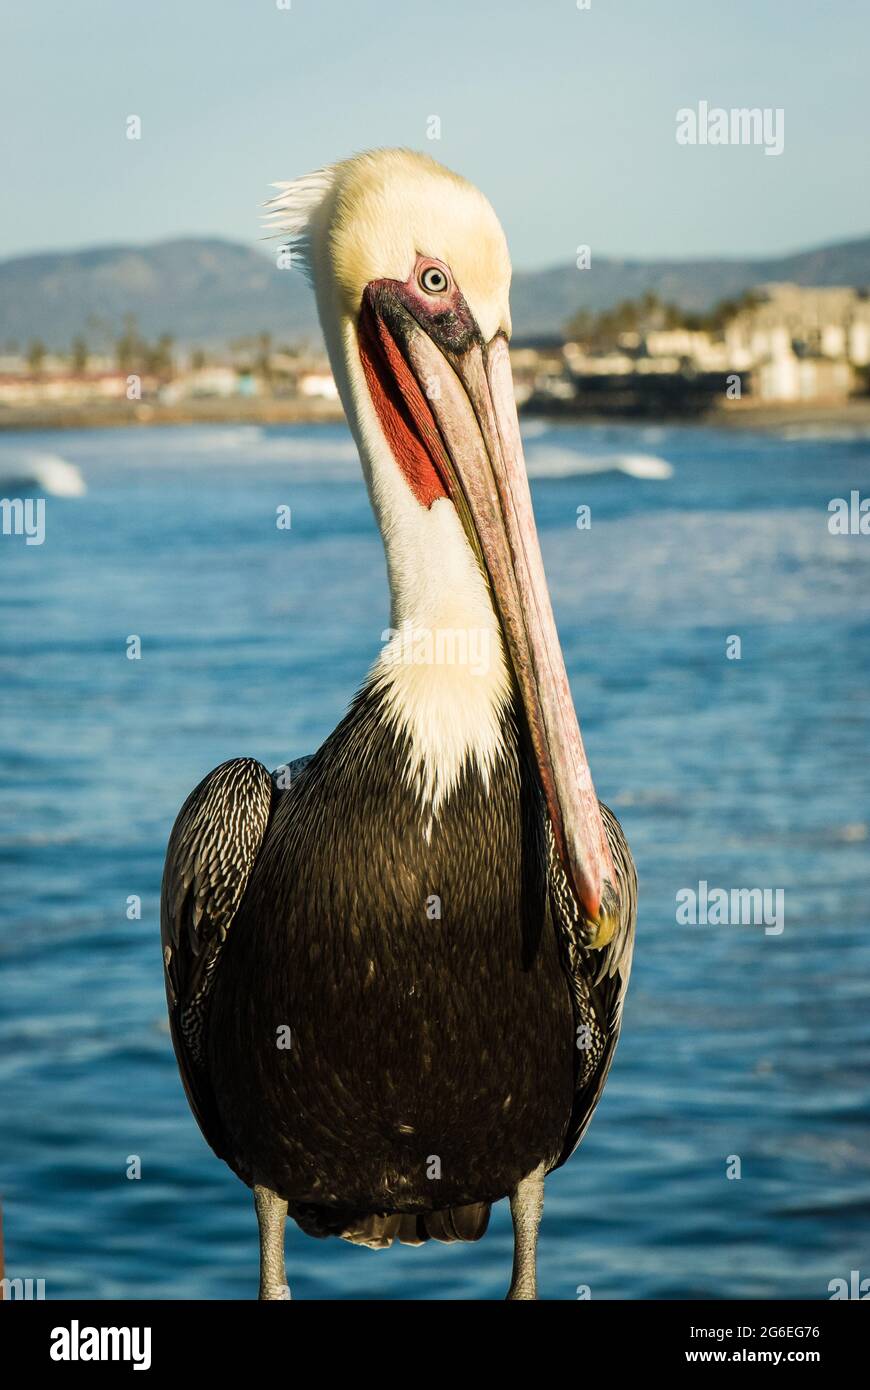 Pelicano marrón macho (Pelecanus occidentalis) en plumaje de apareamiento con la costa en el fondo Foto de stock